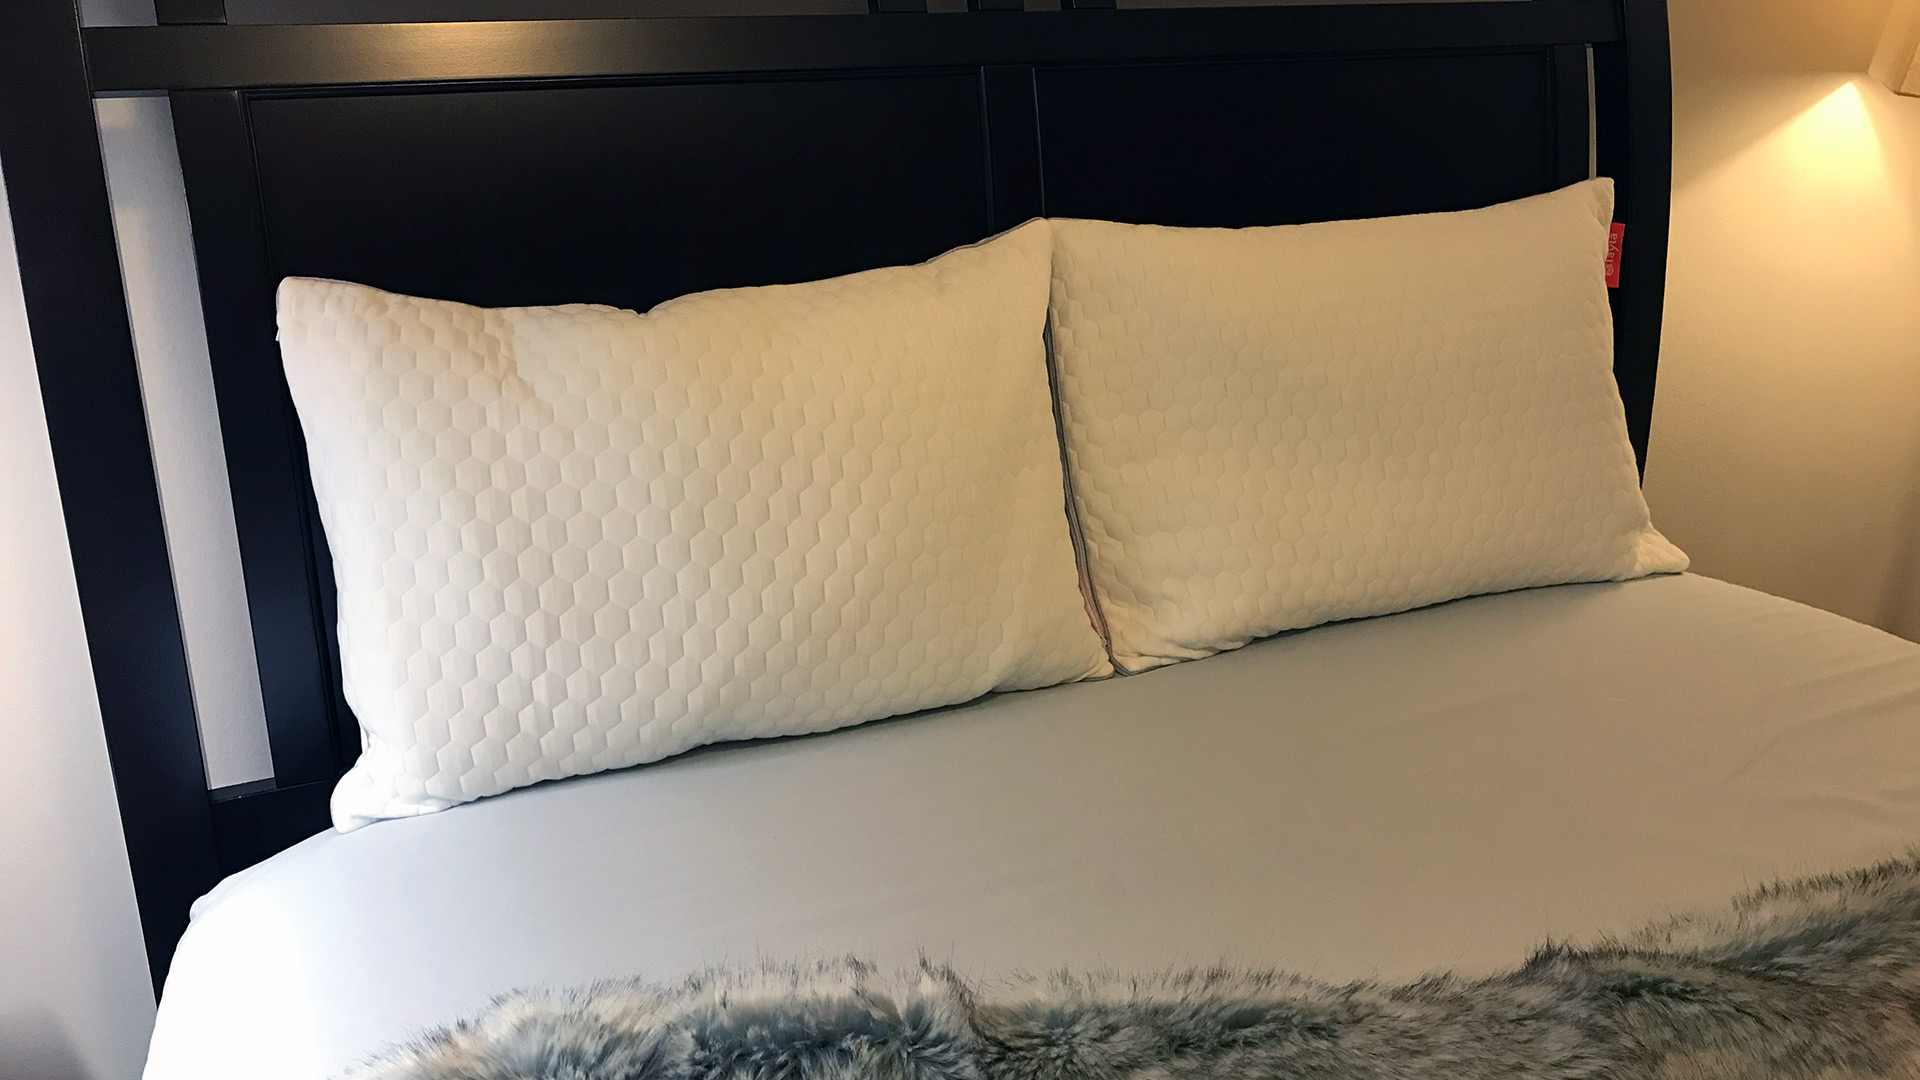 Unbox our new pillow w/us! ✨📦 #laylasleep #sleepbetterlivebetter #mem